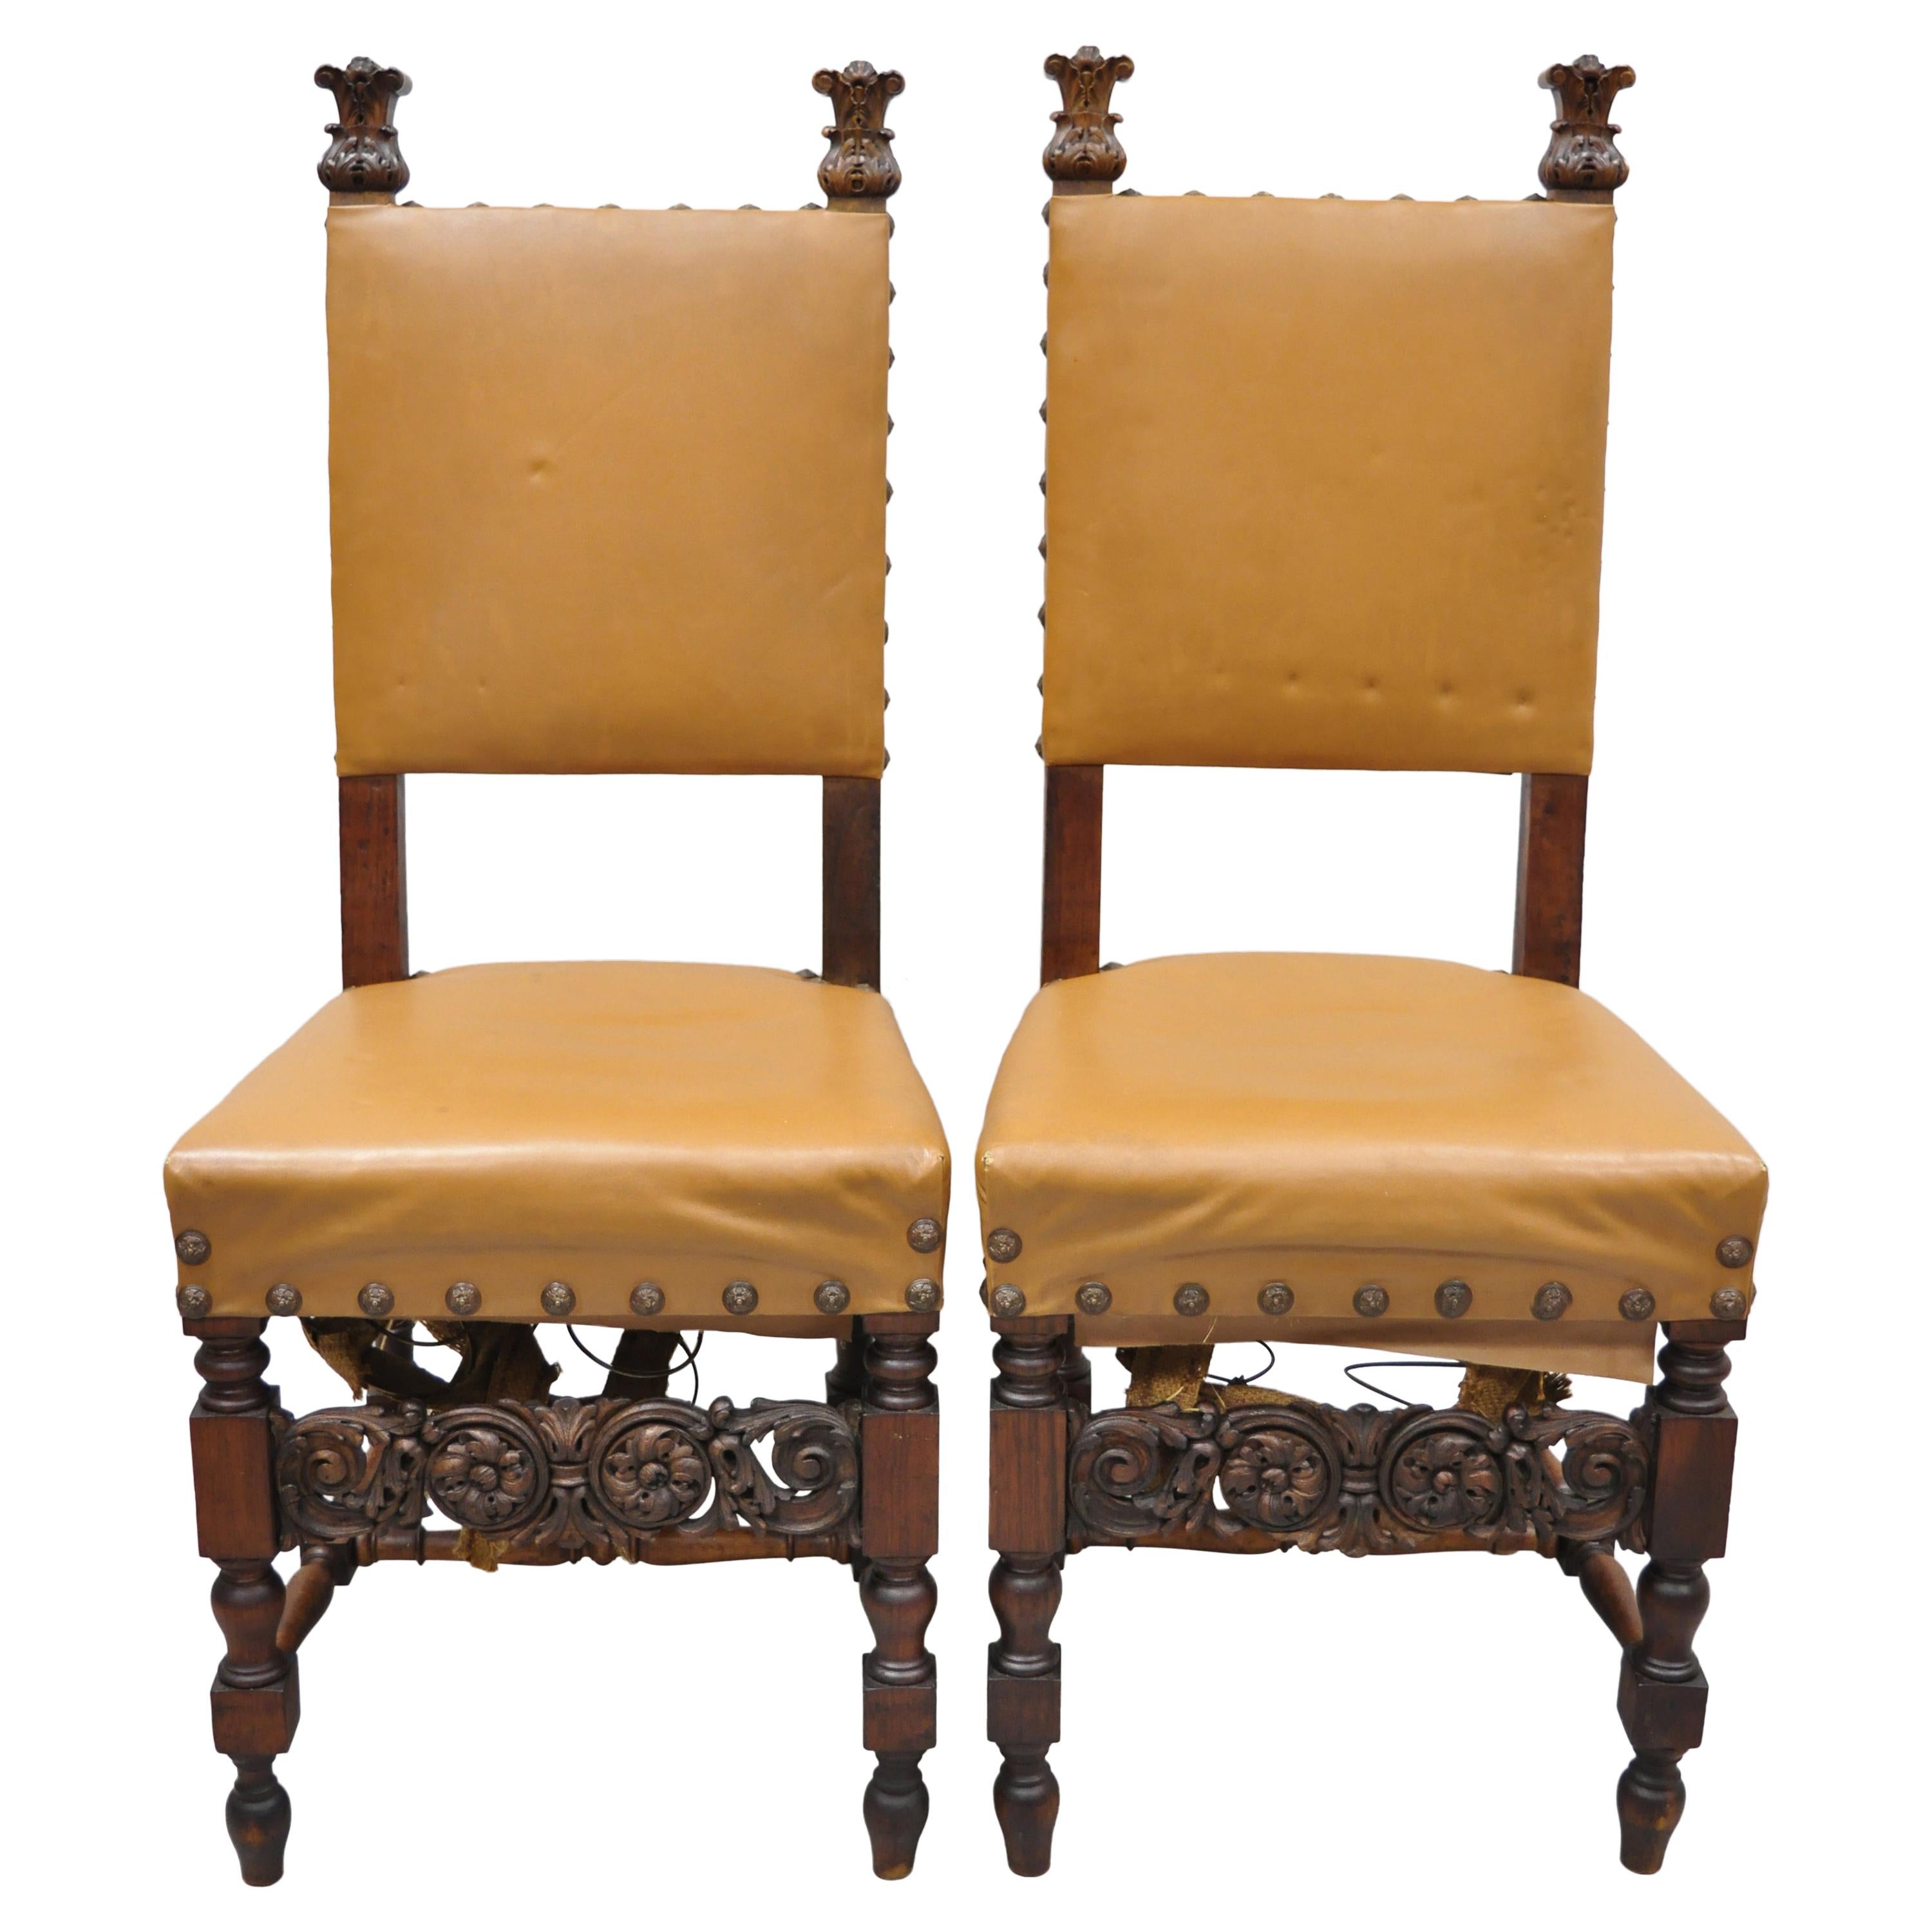 Paar antike italienische Renaissance-Sitzmöbel aus geschnitztem Nussbaumholz mit hoher Rückenlehne